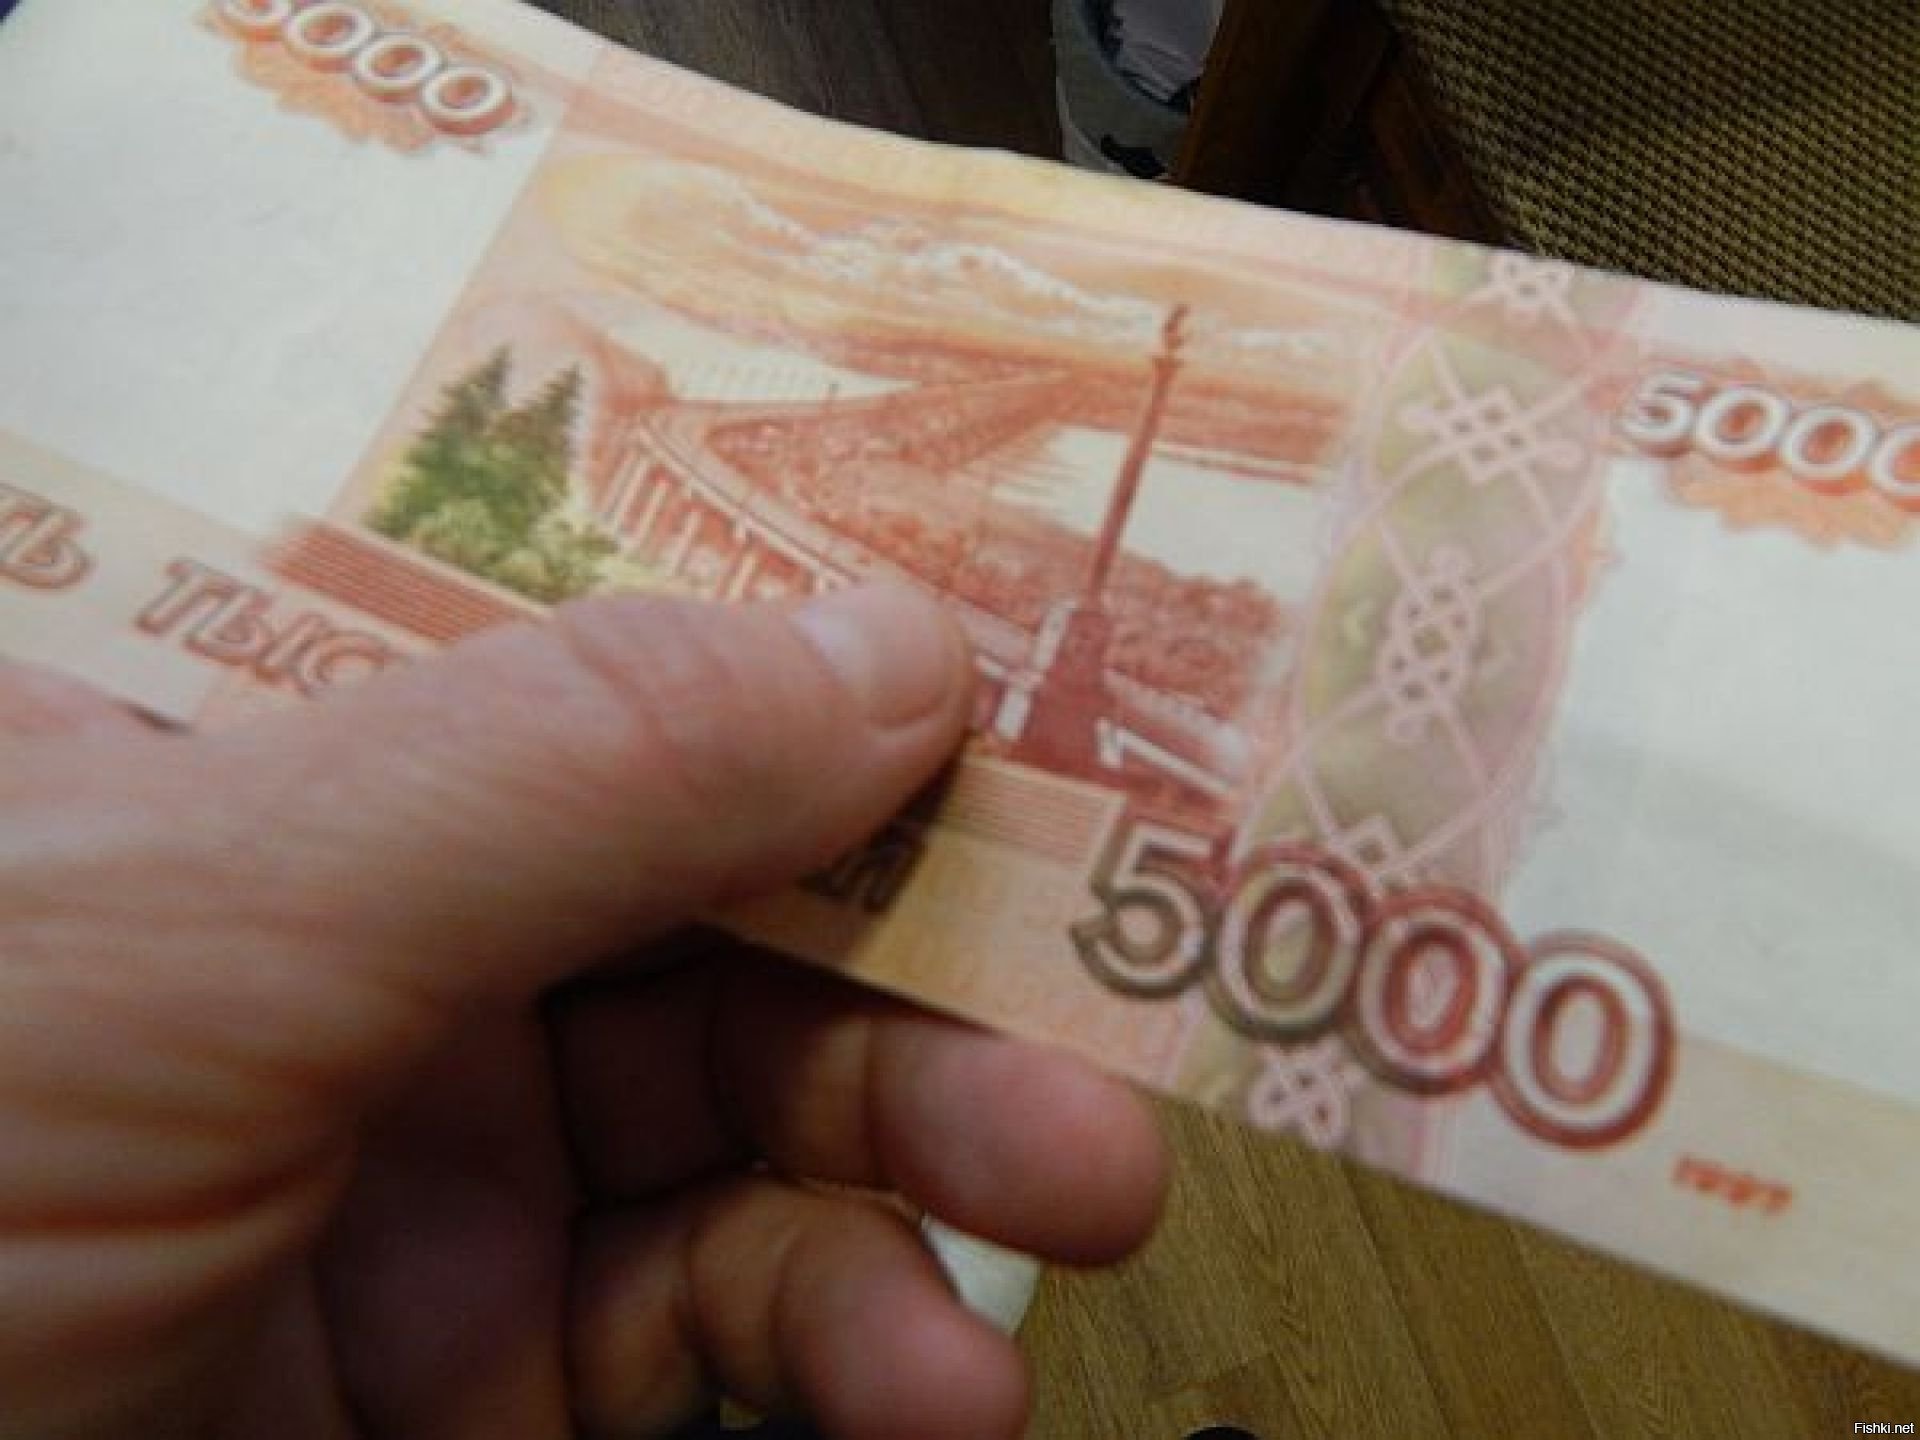 5 т рублей. 5 Тысяч рублей. 5 Тысяч в руке. Пять тысяч рублей в руке. 5000 Купюры в руках.